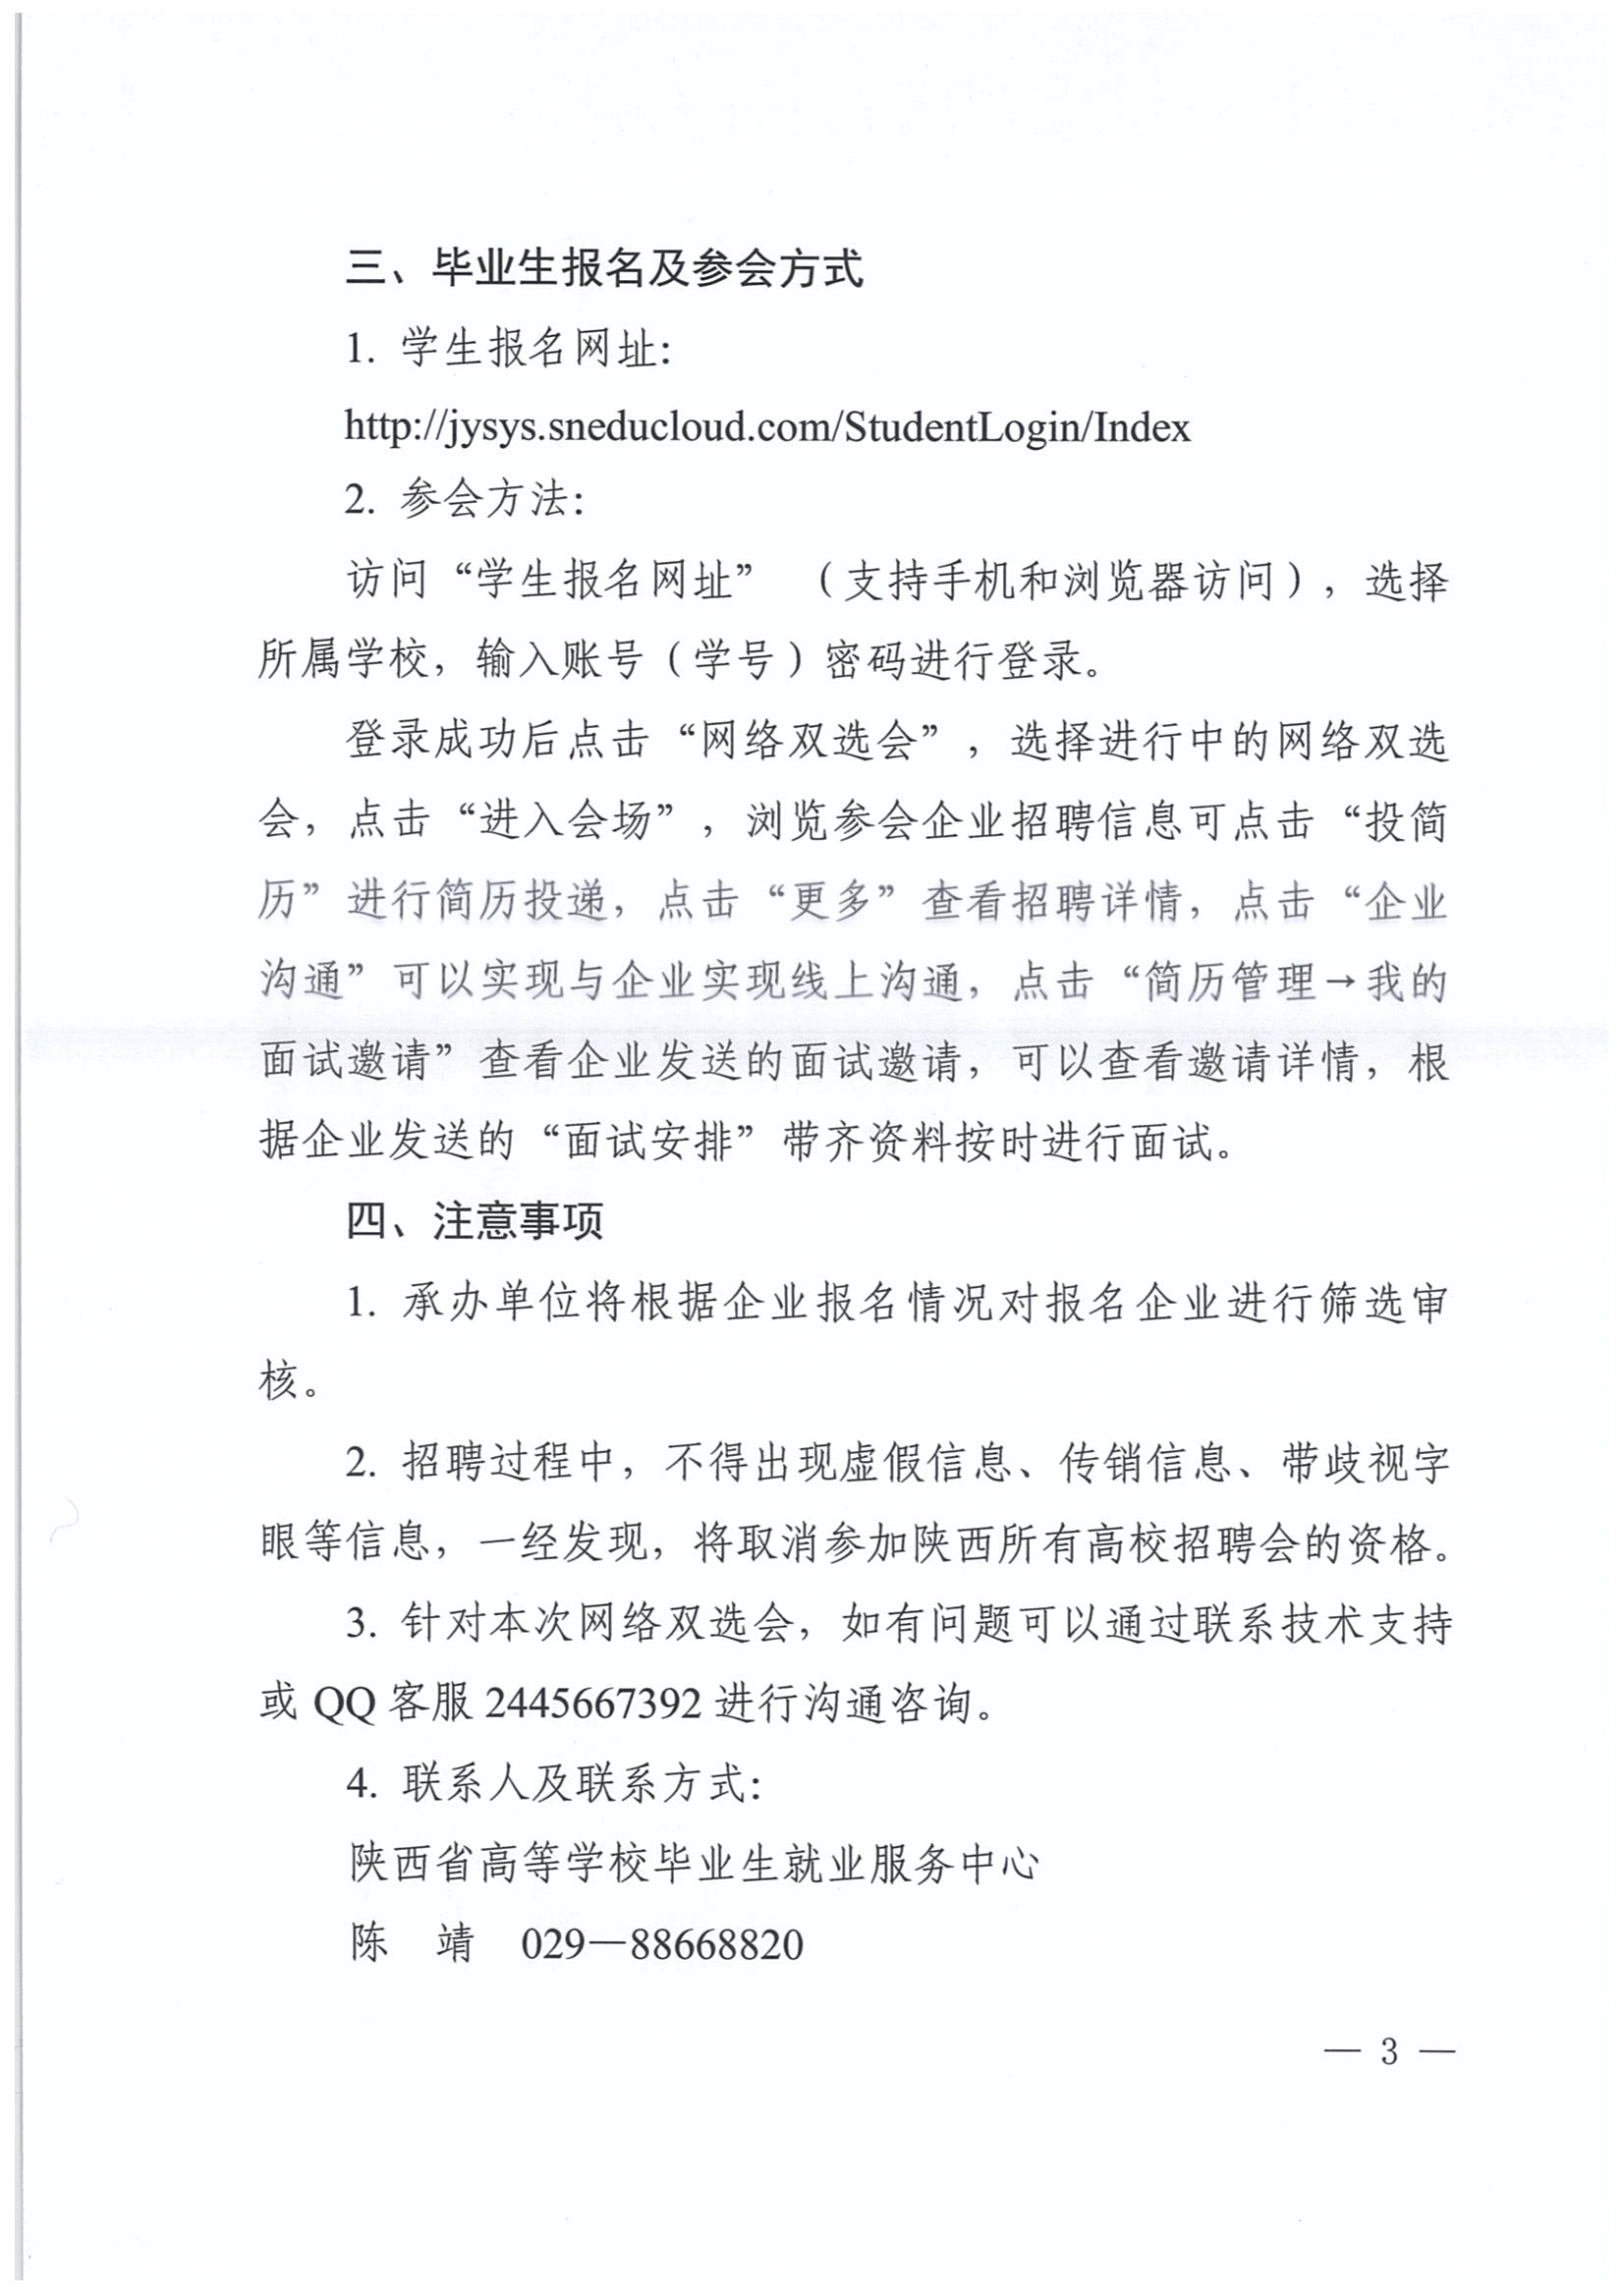 陕西省2020届财经管理类毕业生网络联盟双选会的邀请函3.jpg